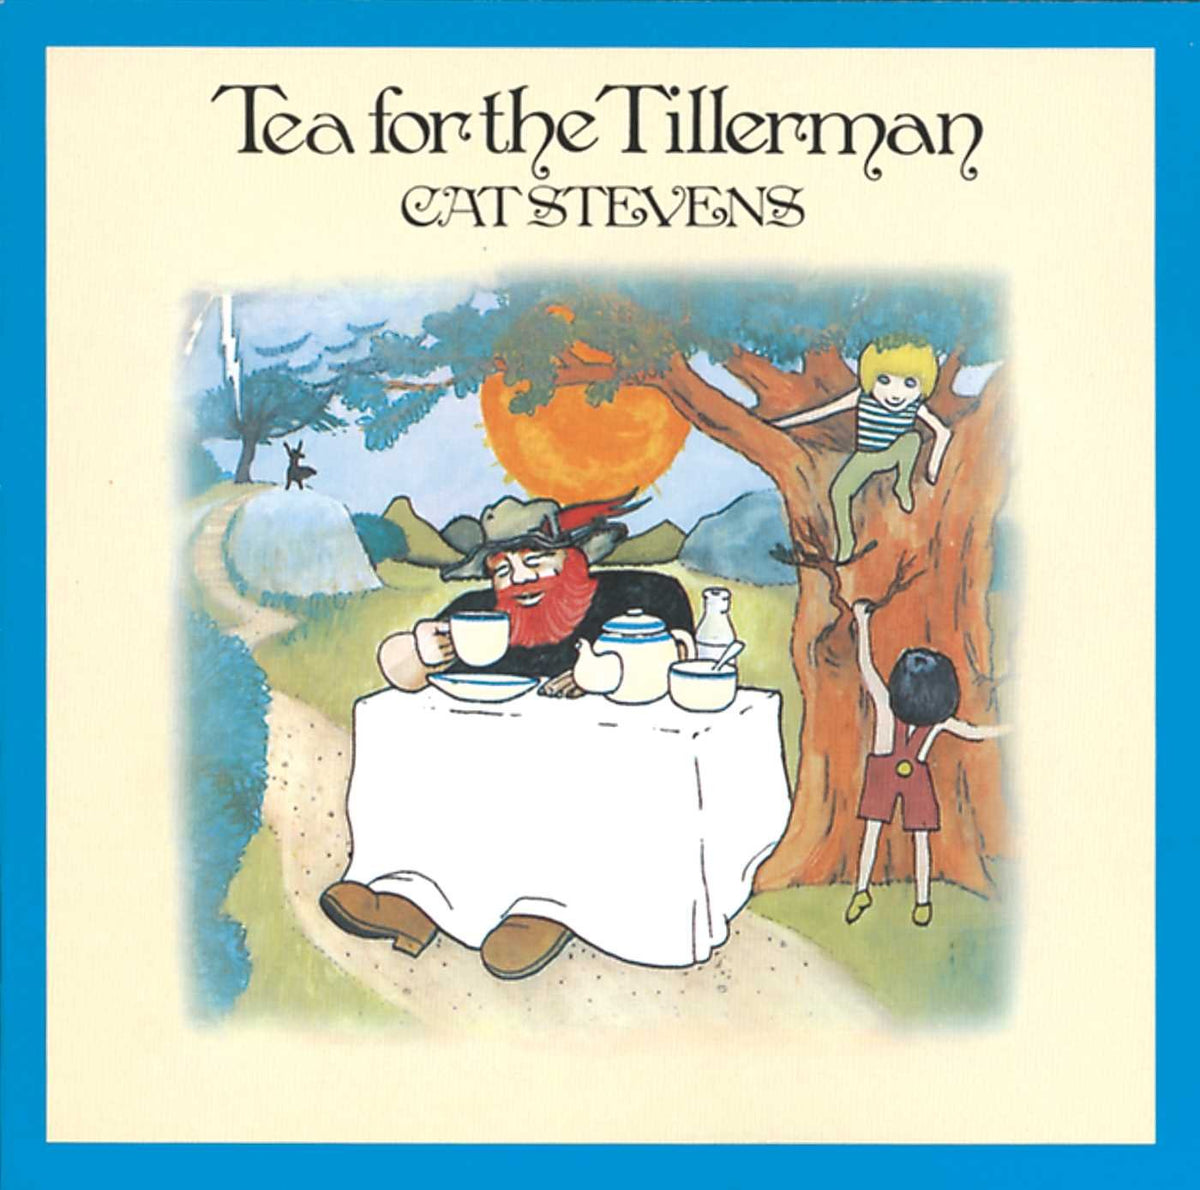 Cat Stevens - Tea for the Tillerman (50th Anniversary)